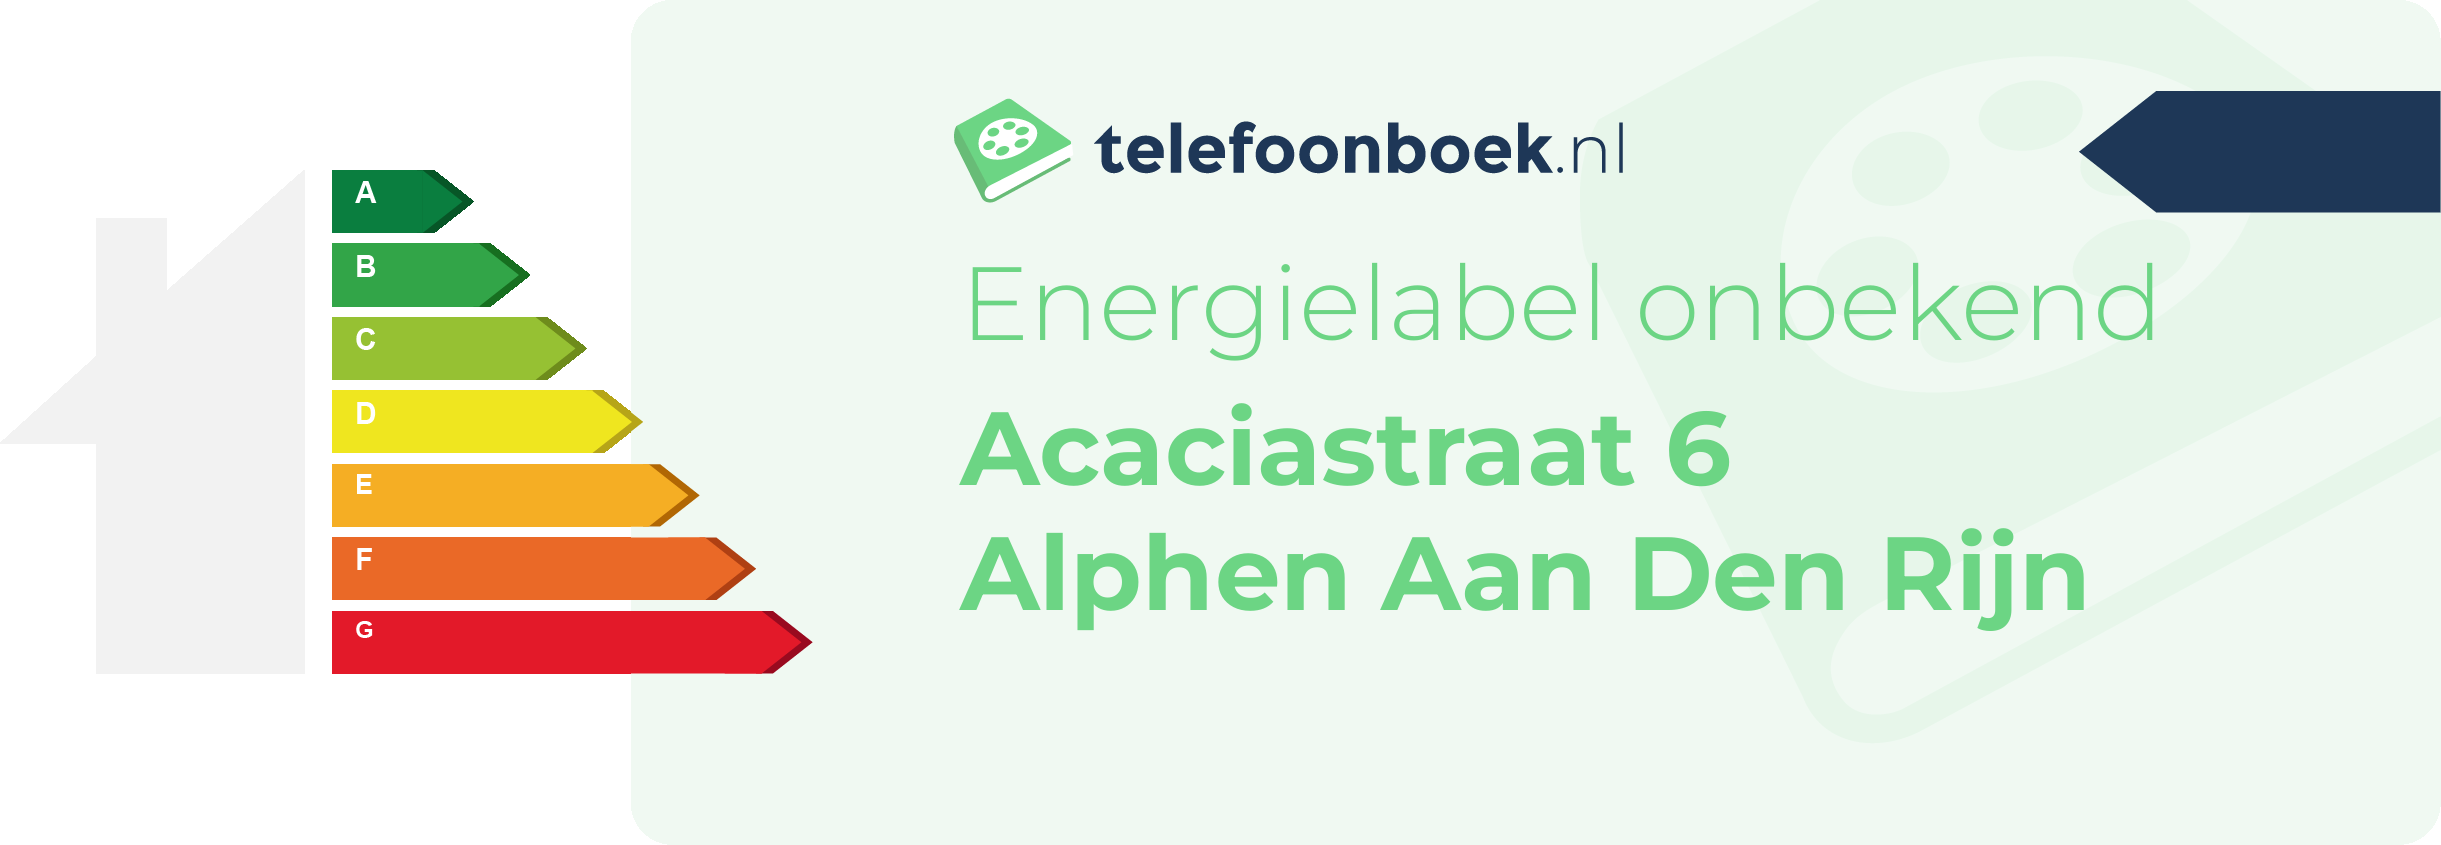 Energielabel Acaciastraat 6 Alphen Aan Den Rijn